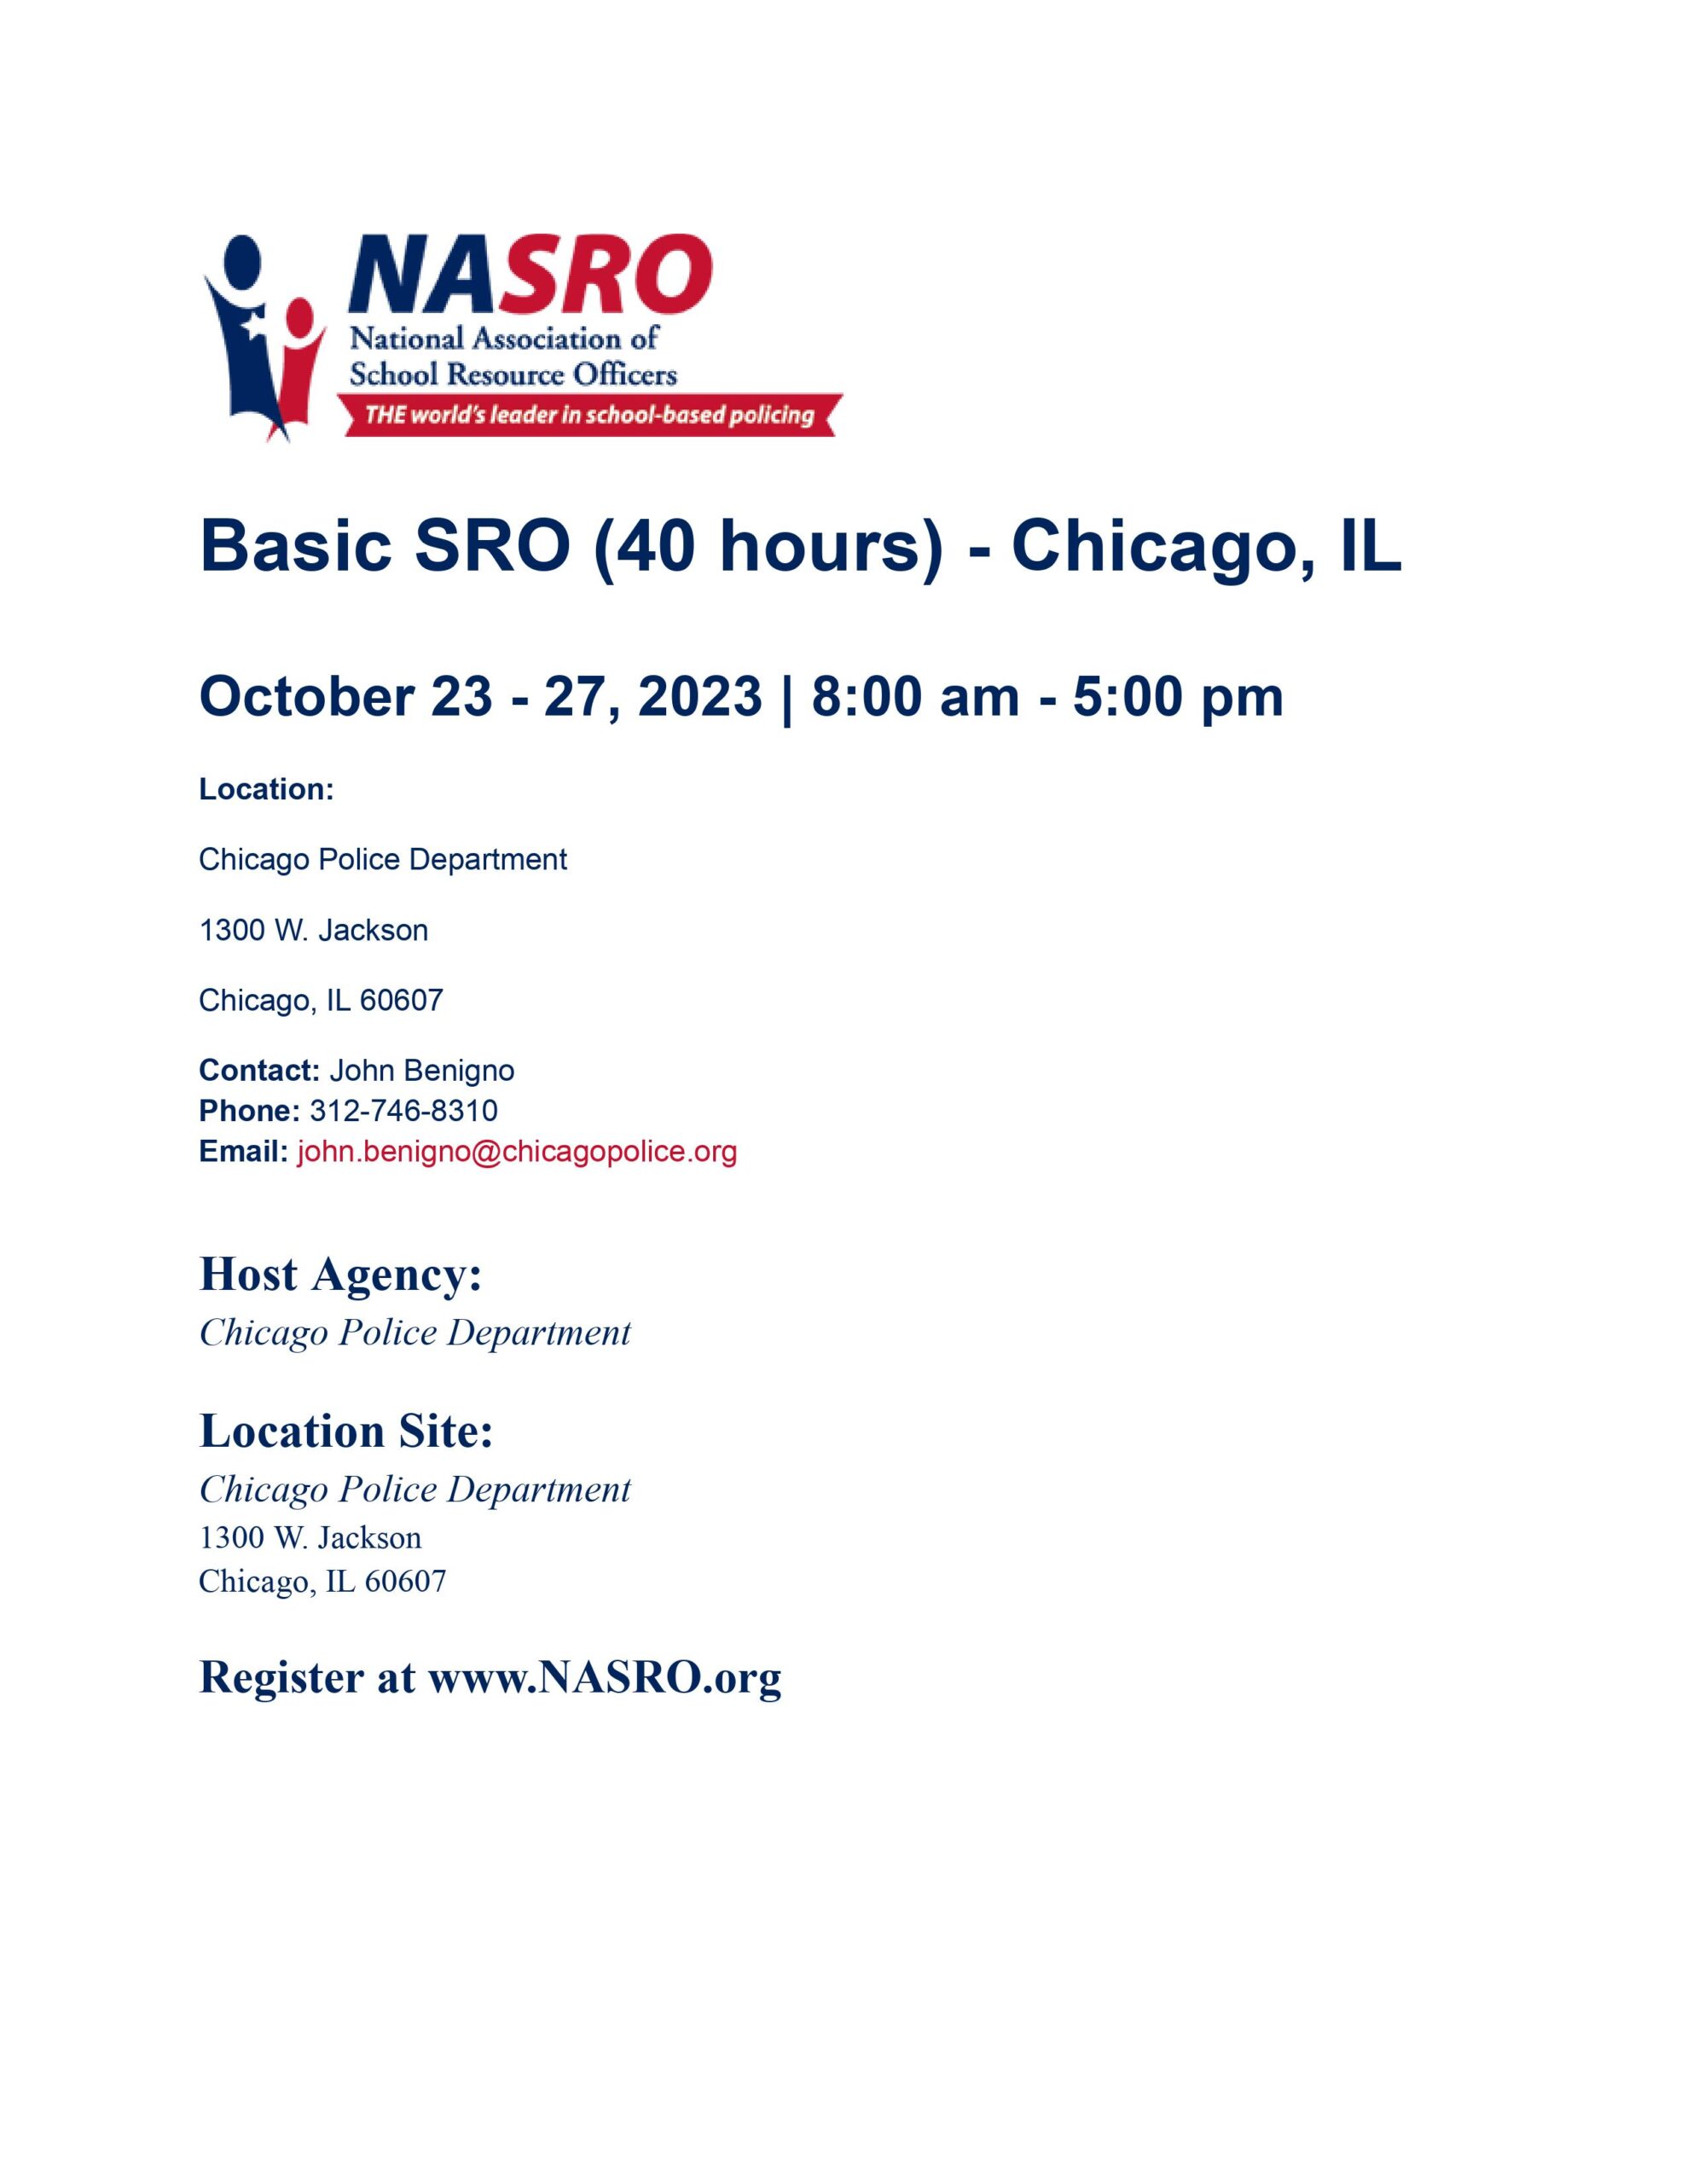 NASRO Basic Chicago - Oct 2023